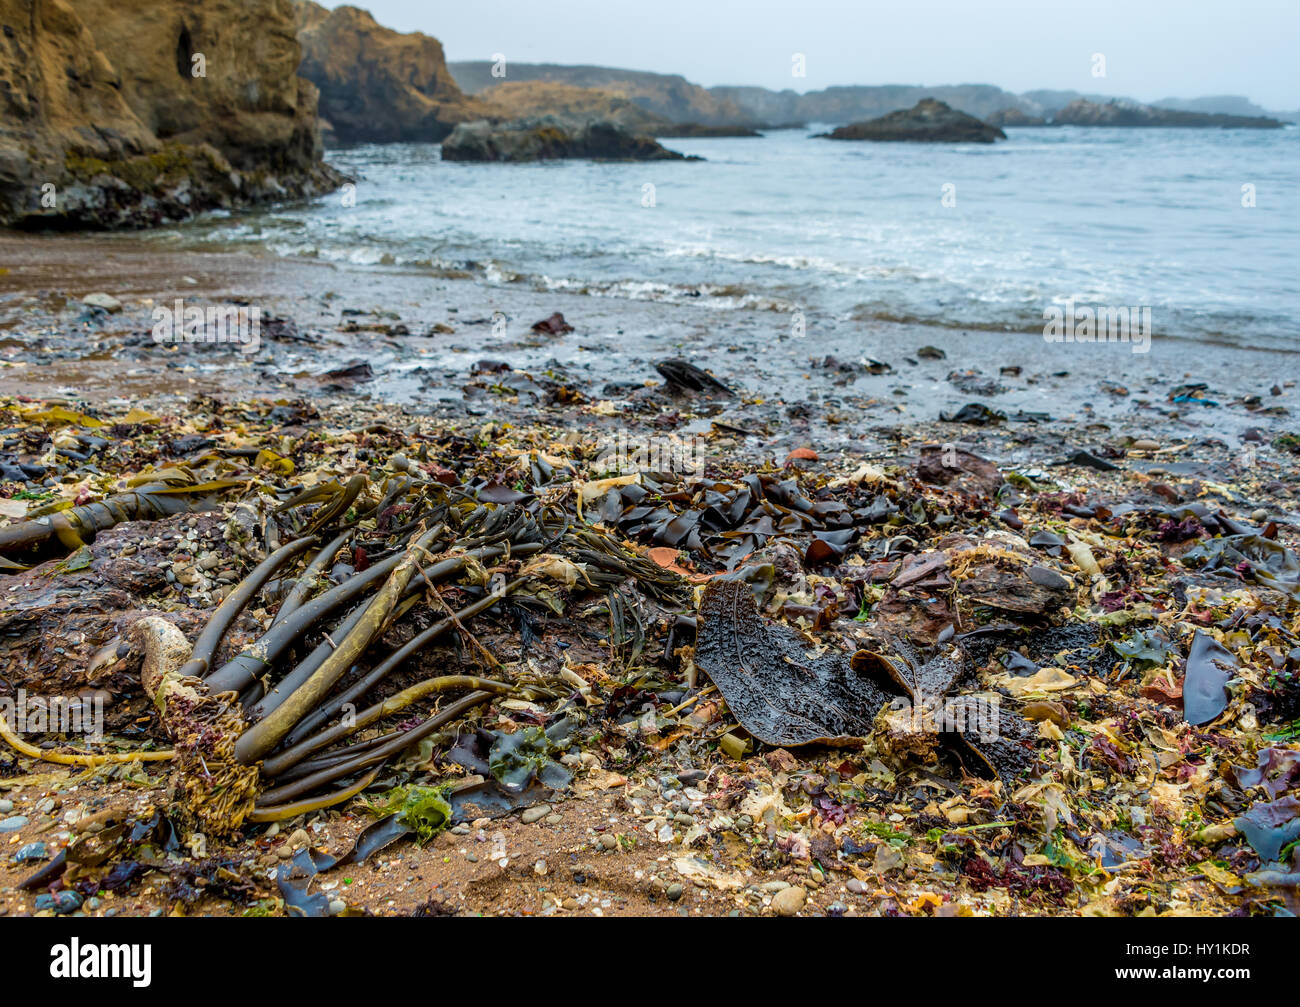 Algues texturé étrangement rejetés sur la mer avec plage de verre Glass Beach, MacKerricher State Park, Fort Bragg, en Californie. Banque D'Images